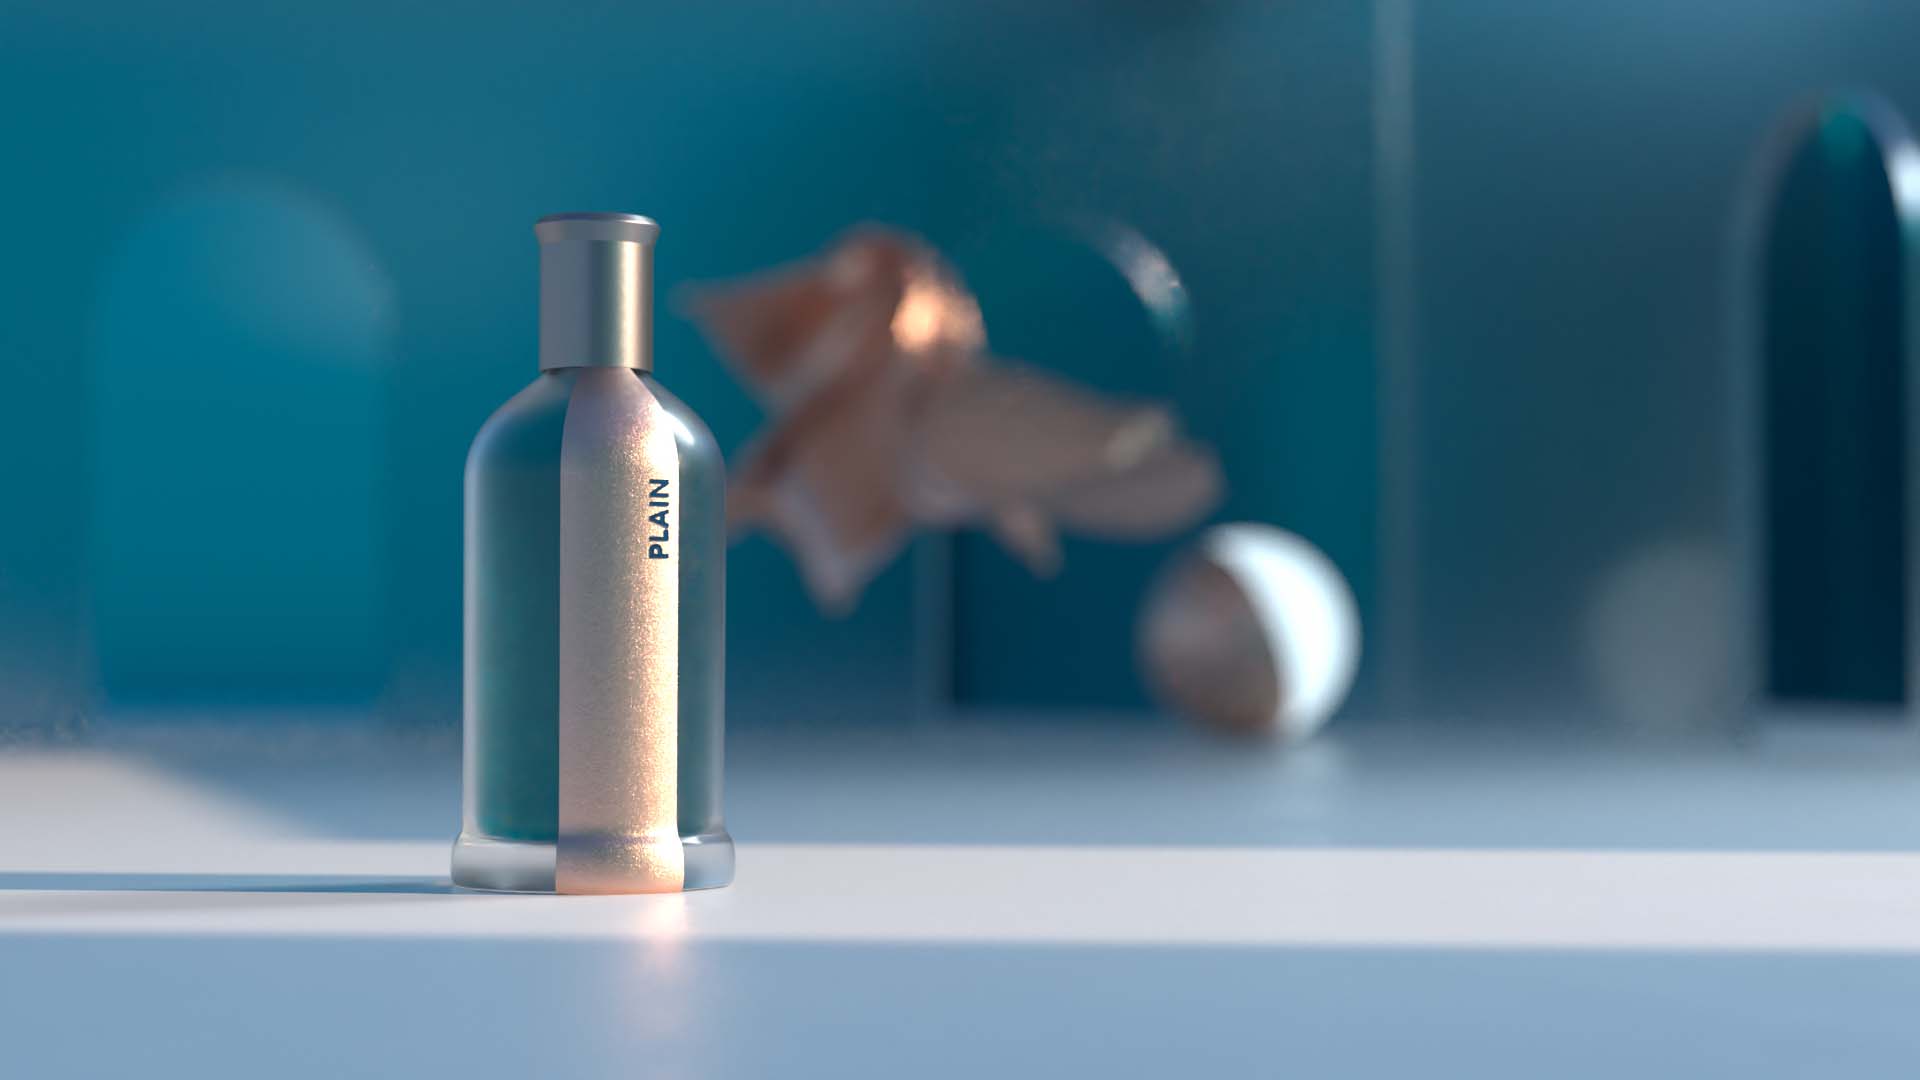 Ebla-Studio-Film-Designagentur-Produktdesign-verpackungsdesign-packaing-design-Plain-Parfum